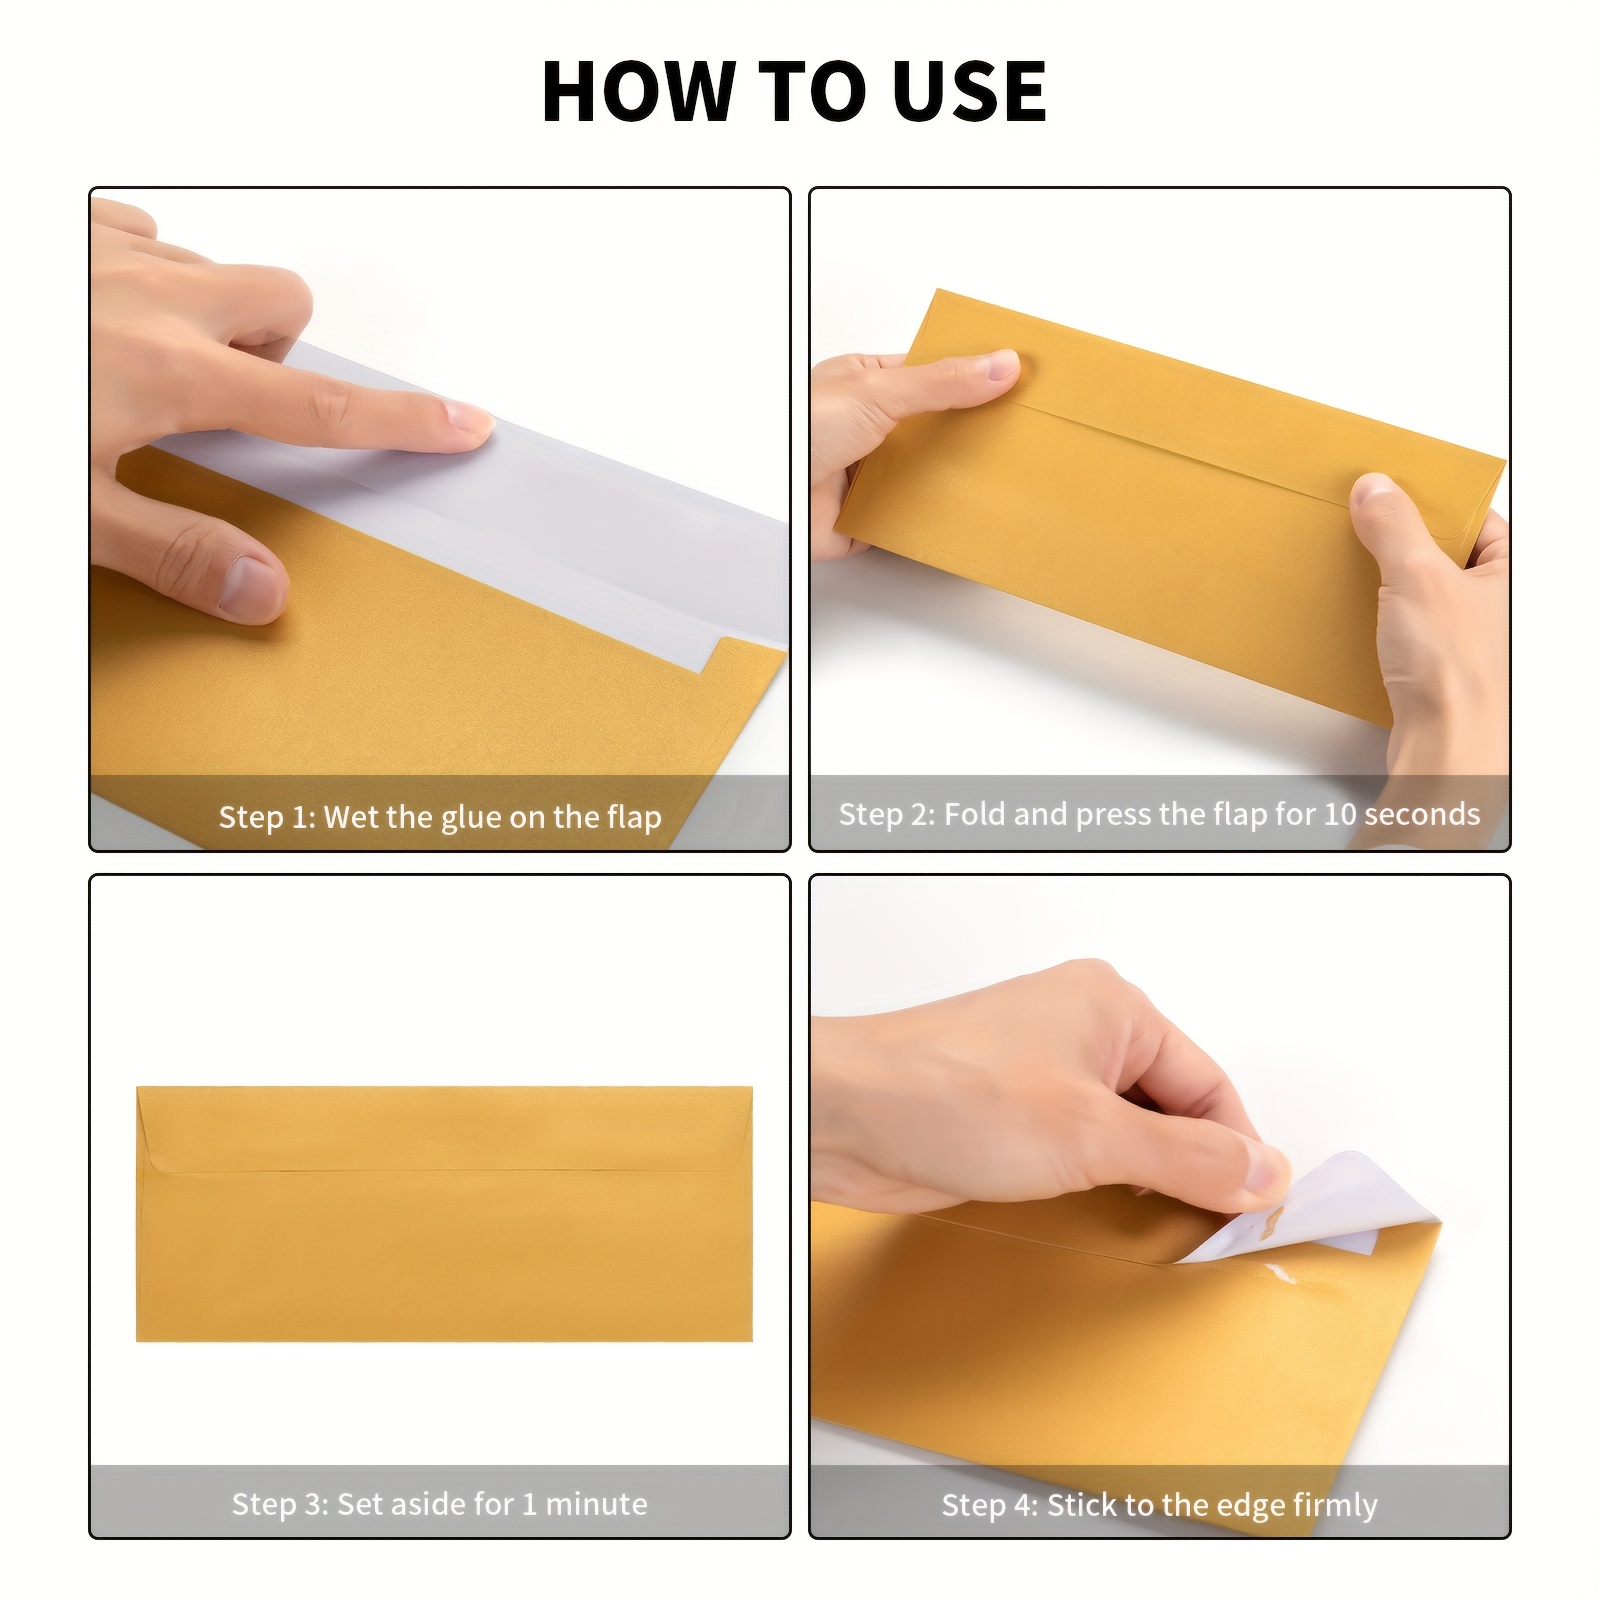 Enveloppes n 10 / Enveloppes professionnelles à impression aléatoire /  Cadeau pour correspondant / Jolies enveloppes format lettre / Motifs variés  / Lot de 10 -  France